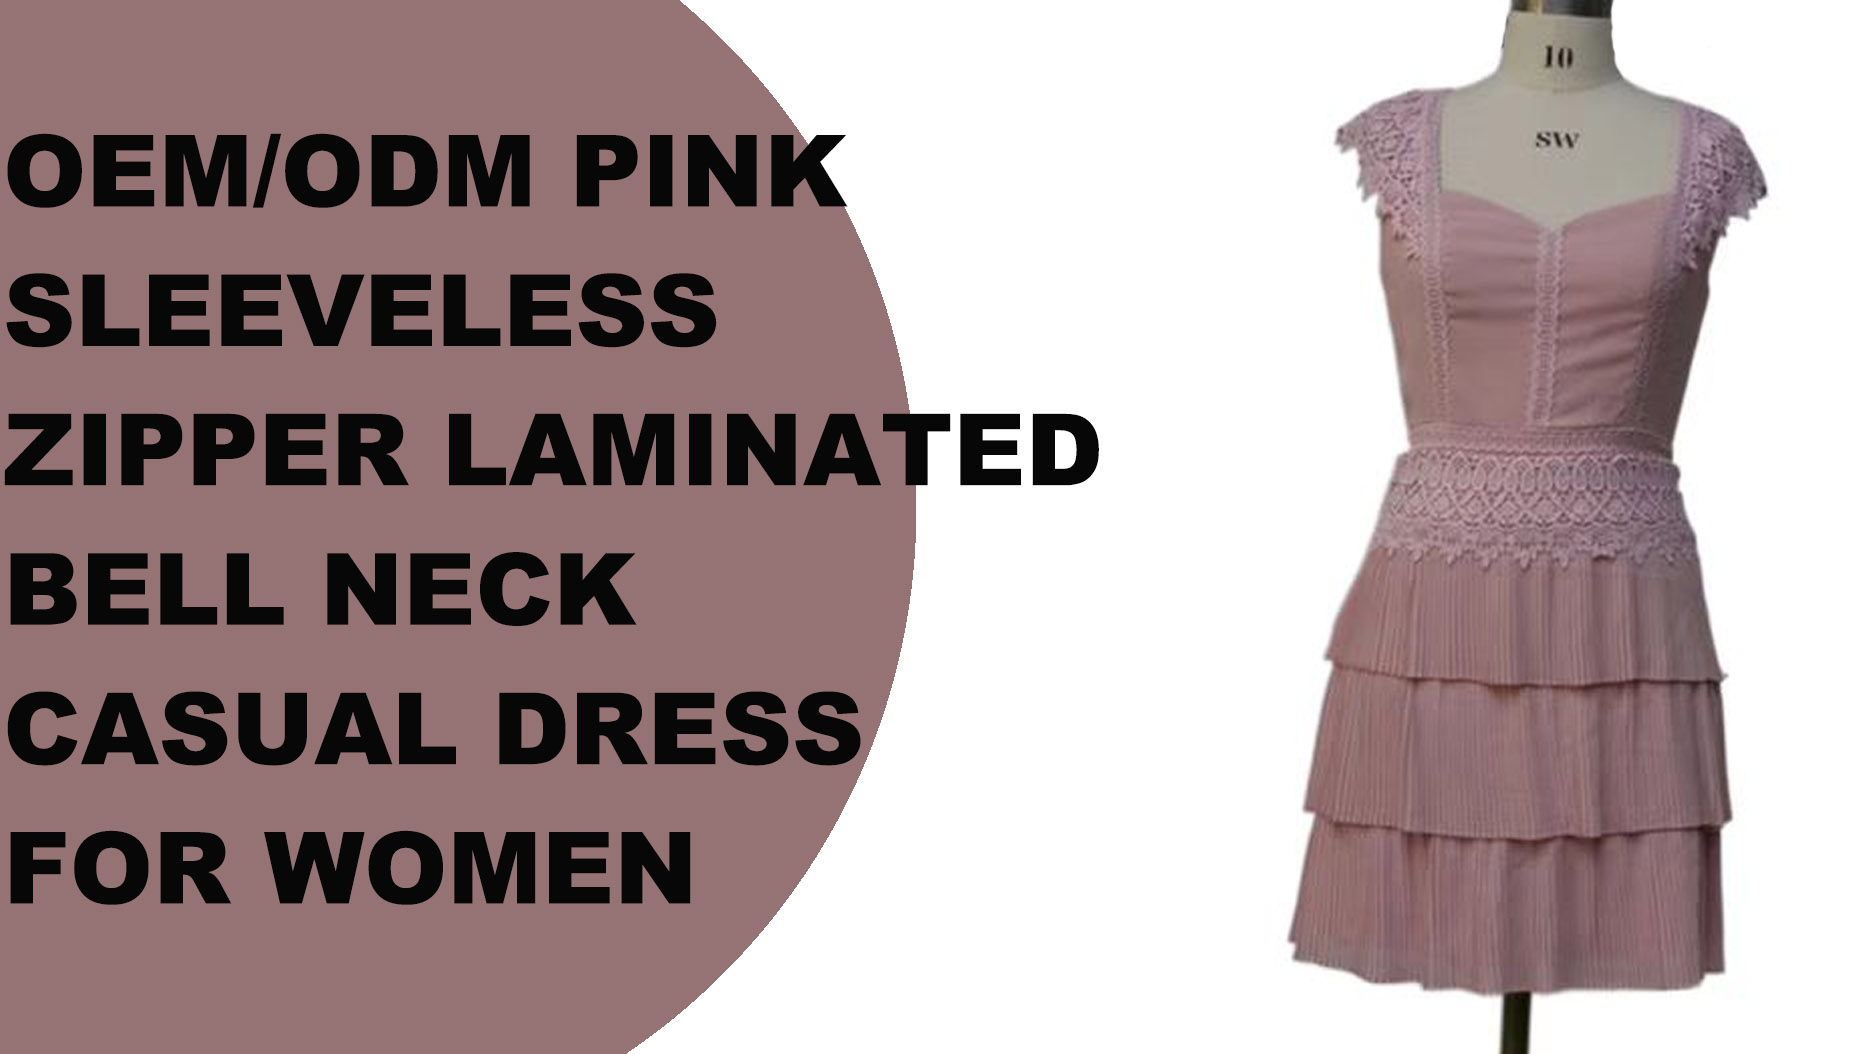 महिलांसाठी OEM/ODM गुलाबी स्लीव्हलेस जिपर लॅमिनेटेड बेल नेक कॅज्युअल ड्रेस